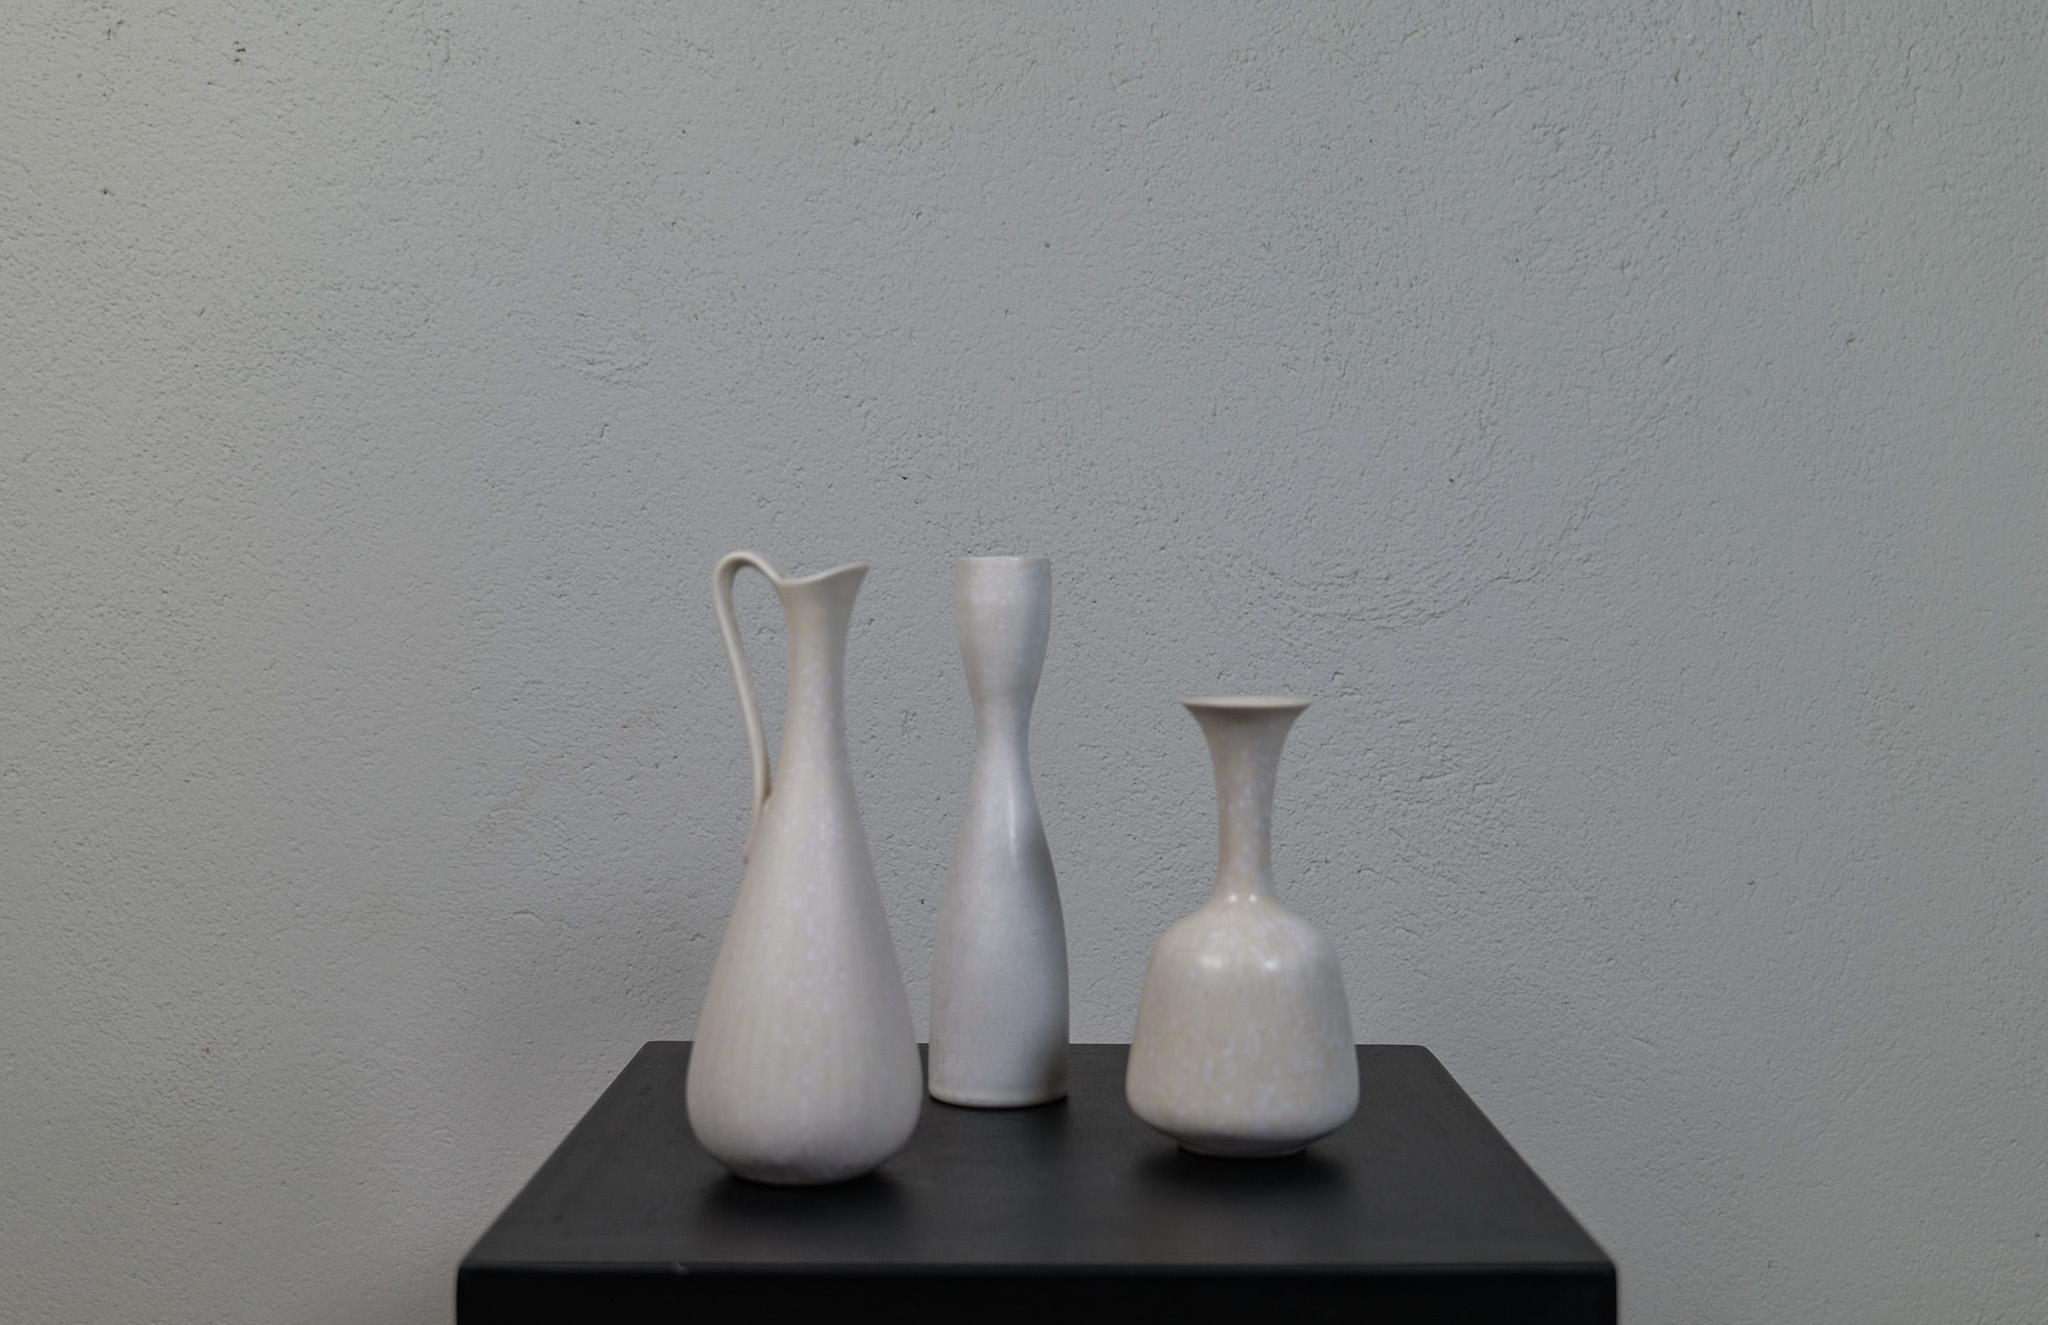 Trois pièces magnifiques, deux vases de Rörstrand et du fabricant, le designer Gunnar Nylund et un de Carl-Harry Stålhane. Fabriqué en Suède au milieu du siècle dernier. Exceptionnels vases émaillés aux courbes magnifiques. Cette série de trois est